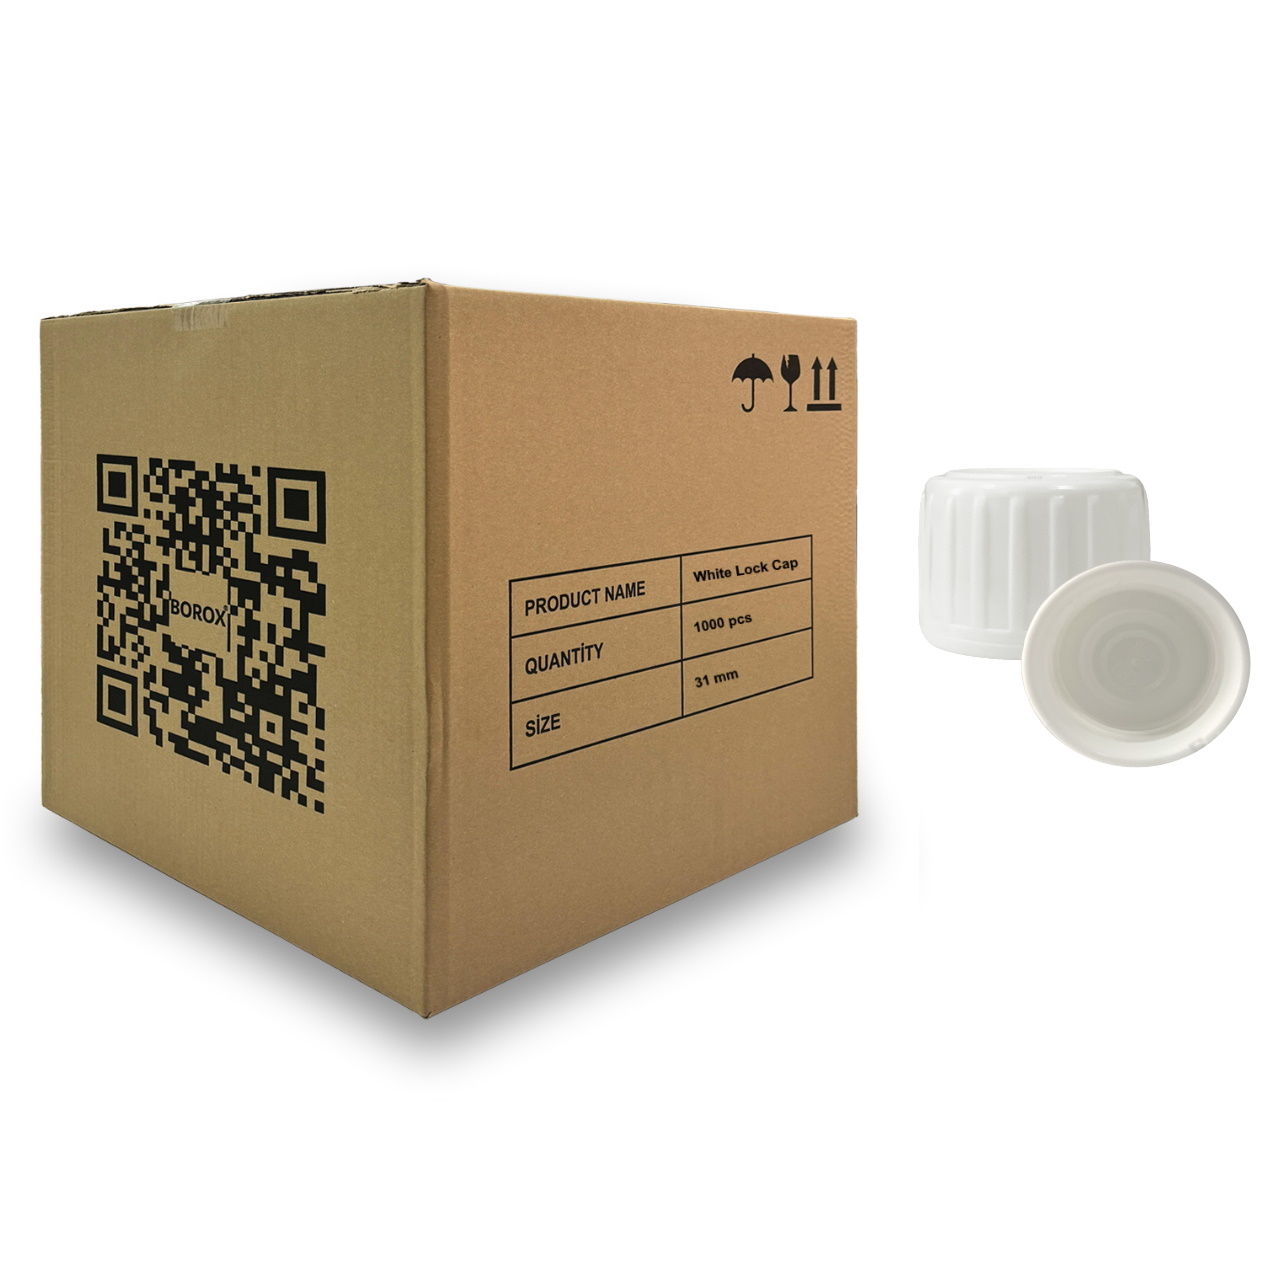 31pp Beyaz Kilitli Kapak - PE Contalı - 31 mm Ağızlı Şişeler İçin Uygundur - 1000 Adet Toptan